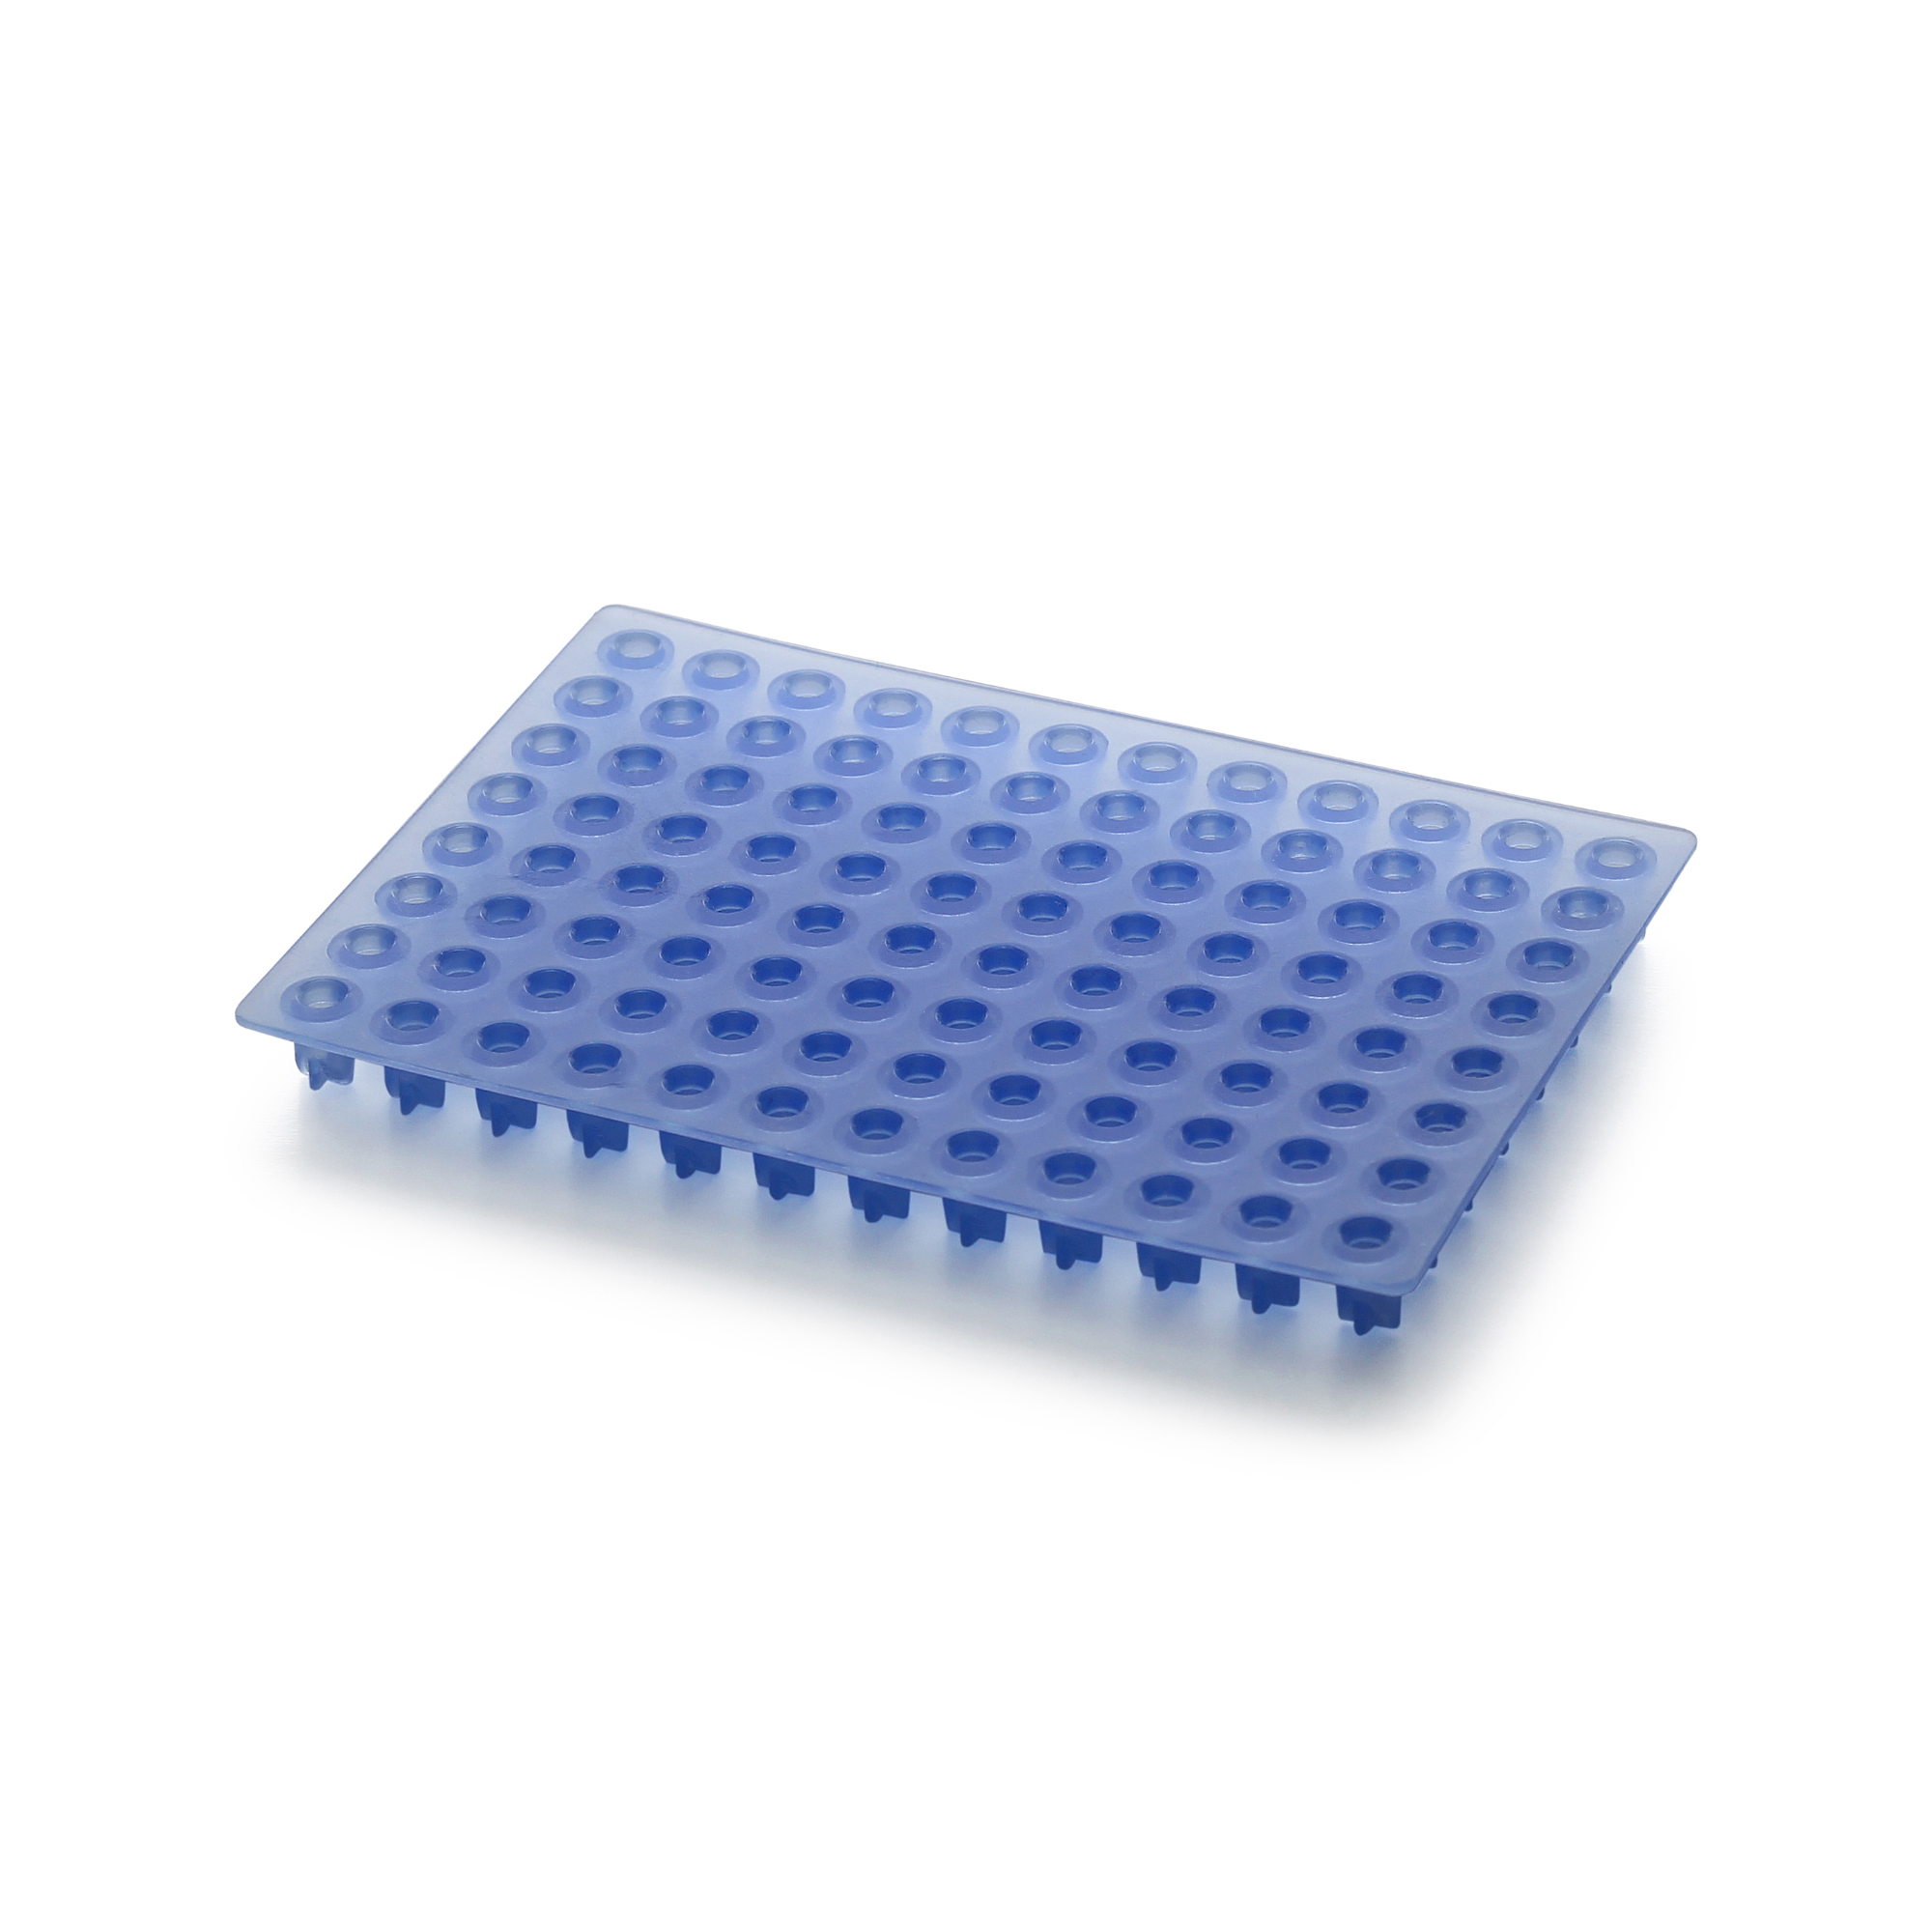 Септа для 96-луночных планшет, совместимая с генетическими анализаторами, голубая (20шт./уп.) S-3500 blue